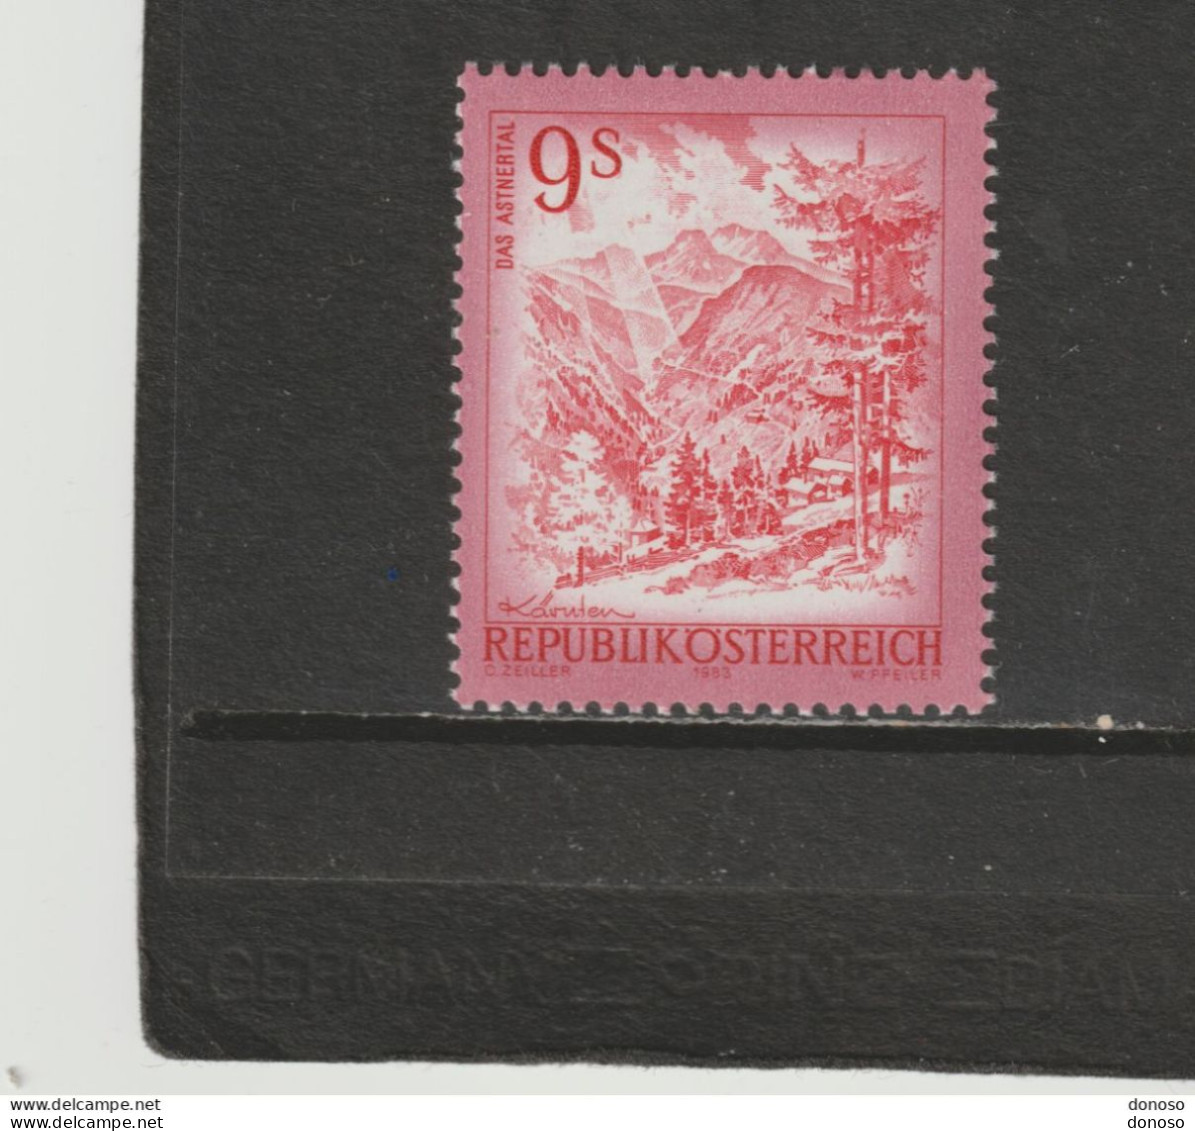 AUTRICHE 1983 Asten, Carinthie Yvert 1559, Michel 1730 NEUF** MNH Cote 3 Euros - Unused Stamps